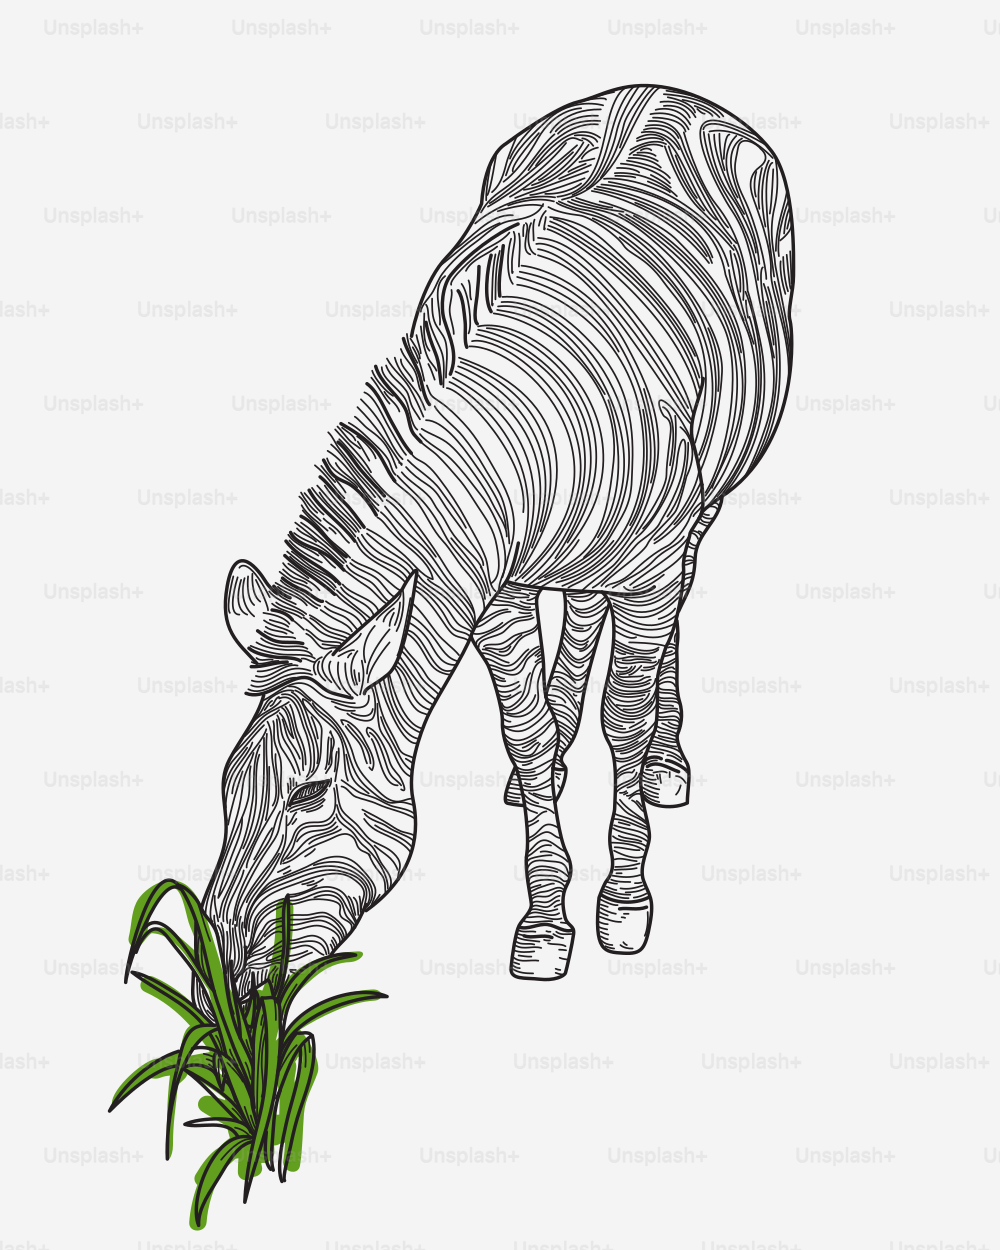 Liniengrafik eines Zebras, das Gras nascht.